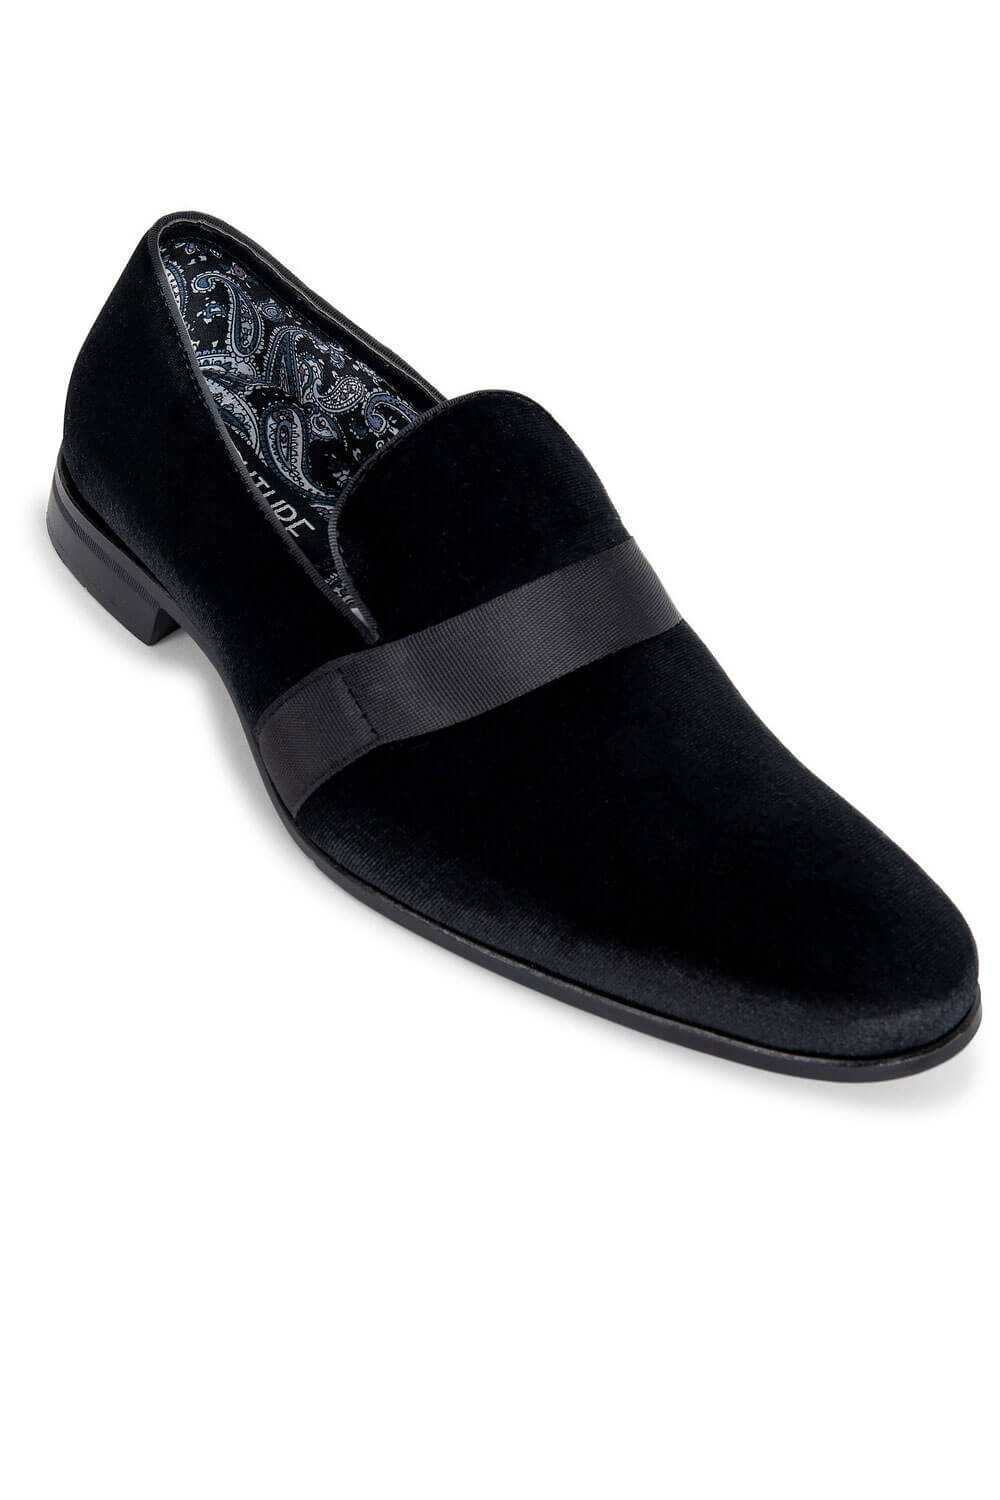 Black Loafers Belmeade Mens Wear